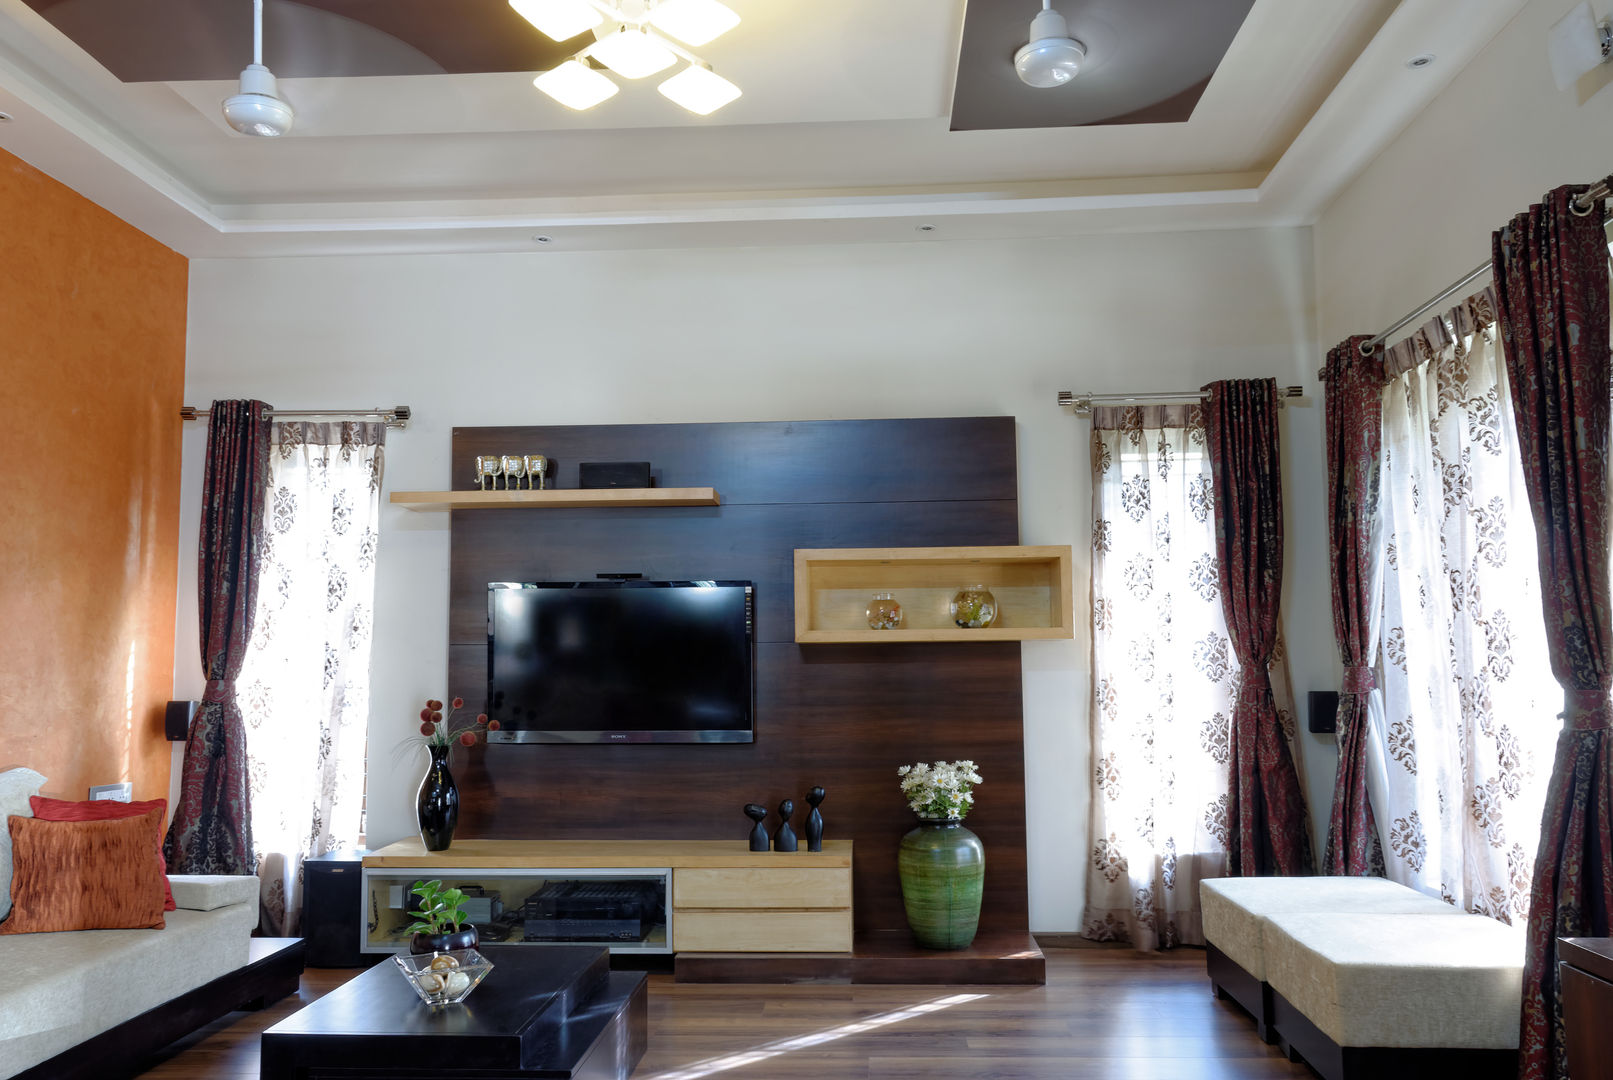 Jaya & Rajesh Cozy Nest Interiors Livings modernos: Ideas, imágenes y decoración